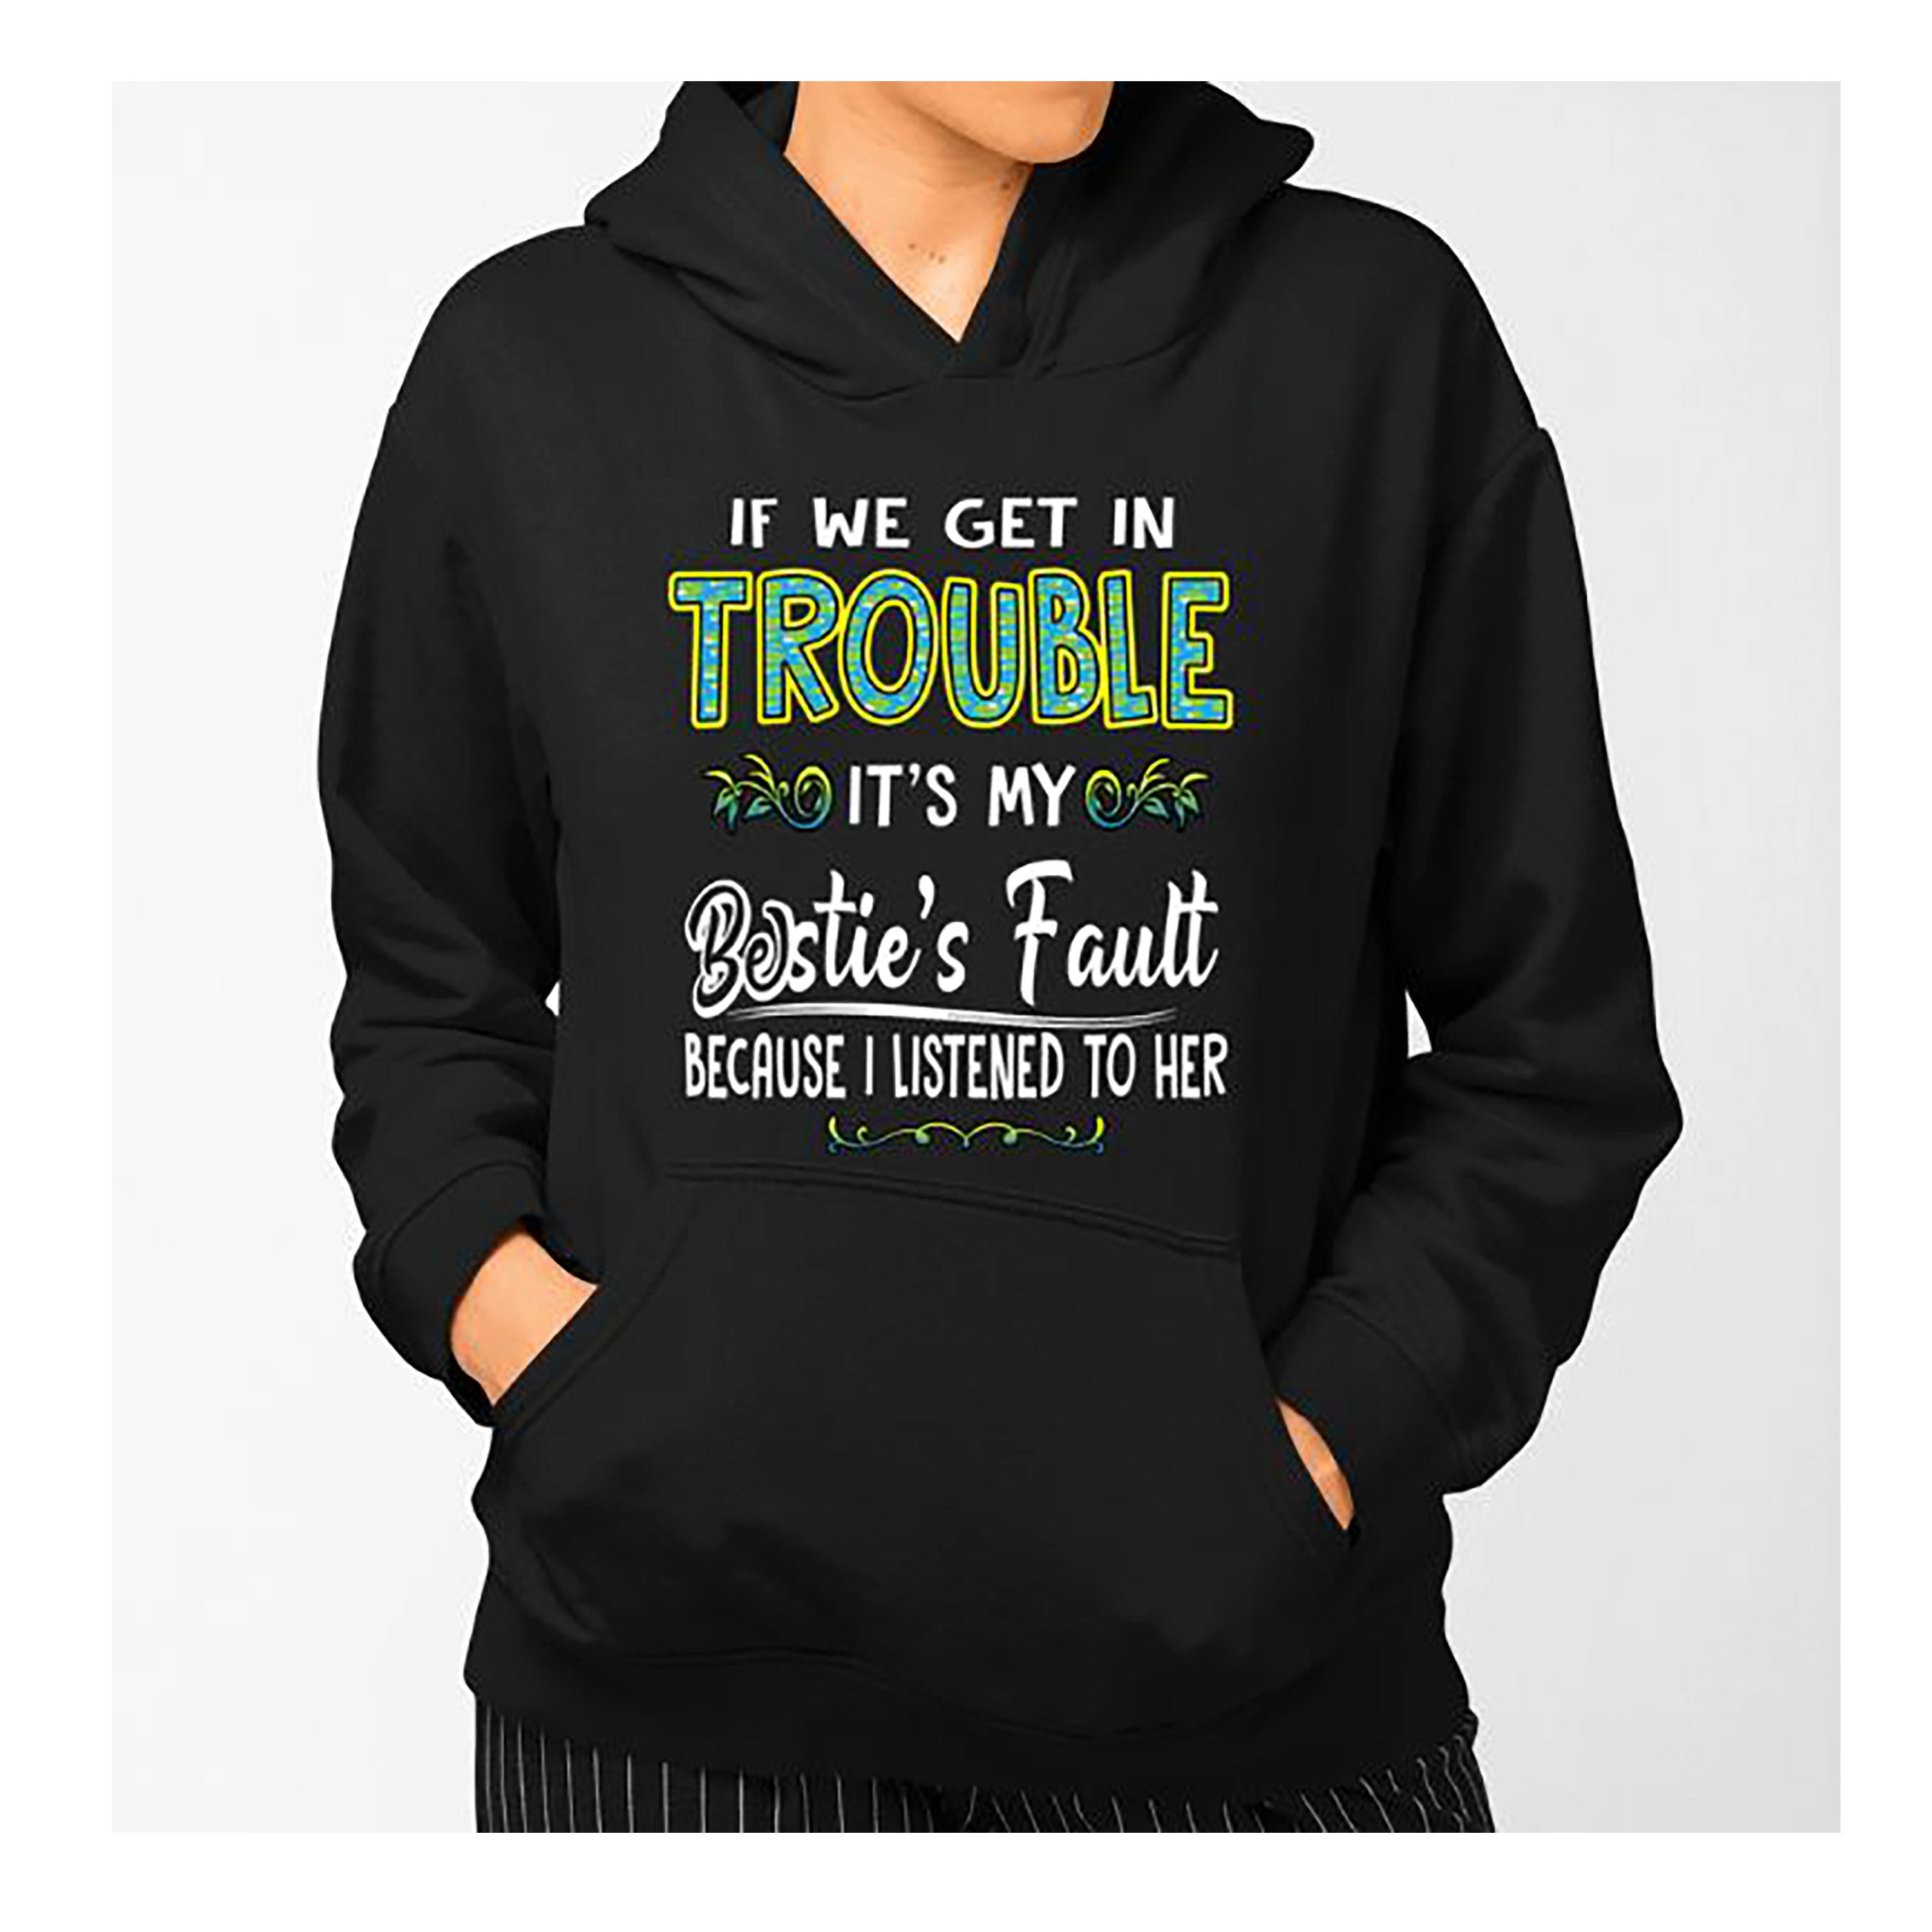 "IF WE GET IN TROUBLE" Hoodie & Sweatshirt